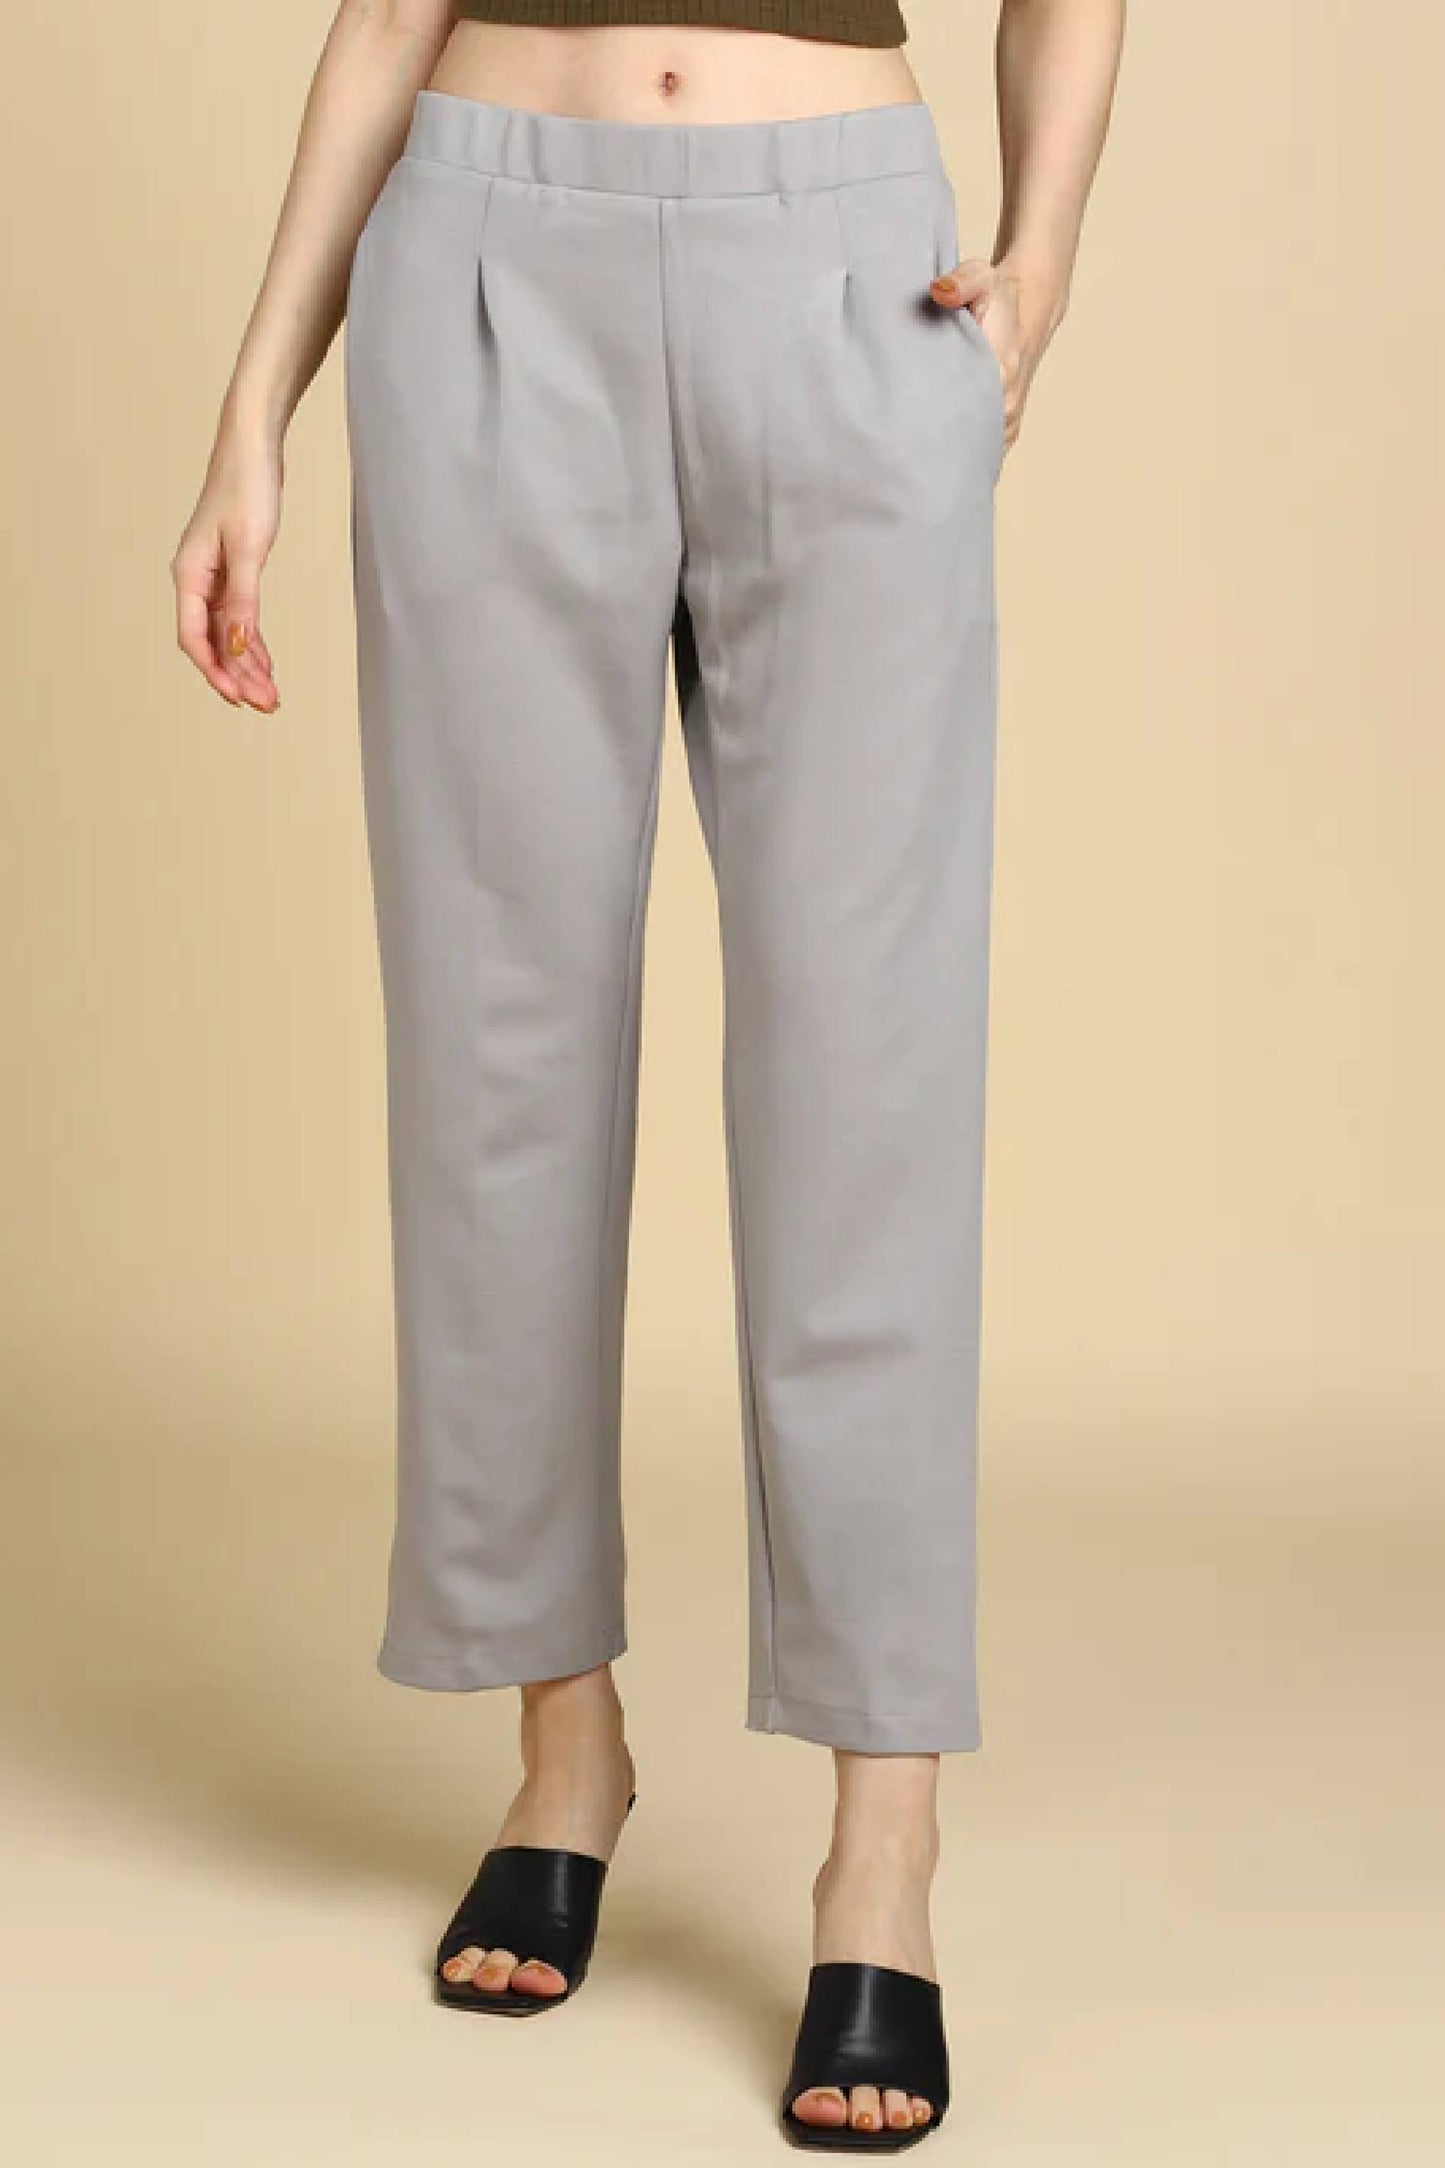 Light Grey Formal Trouser For Women Wear